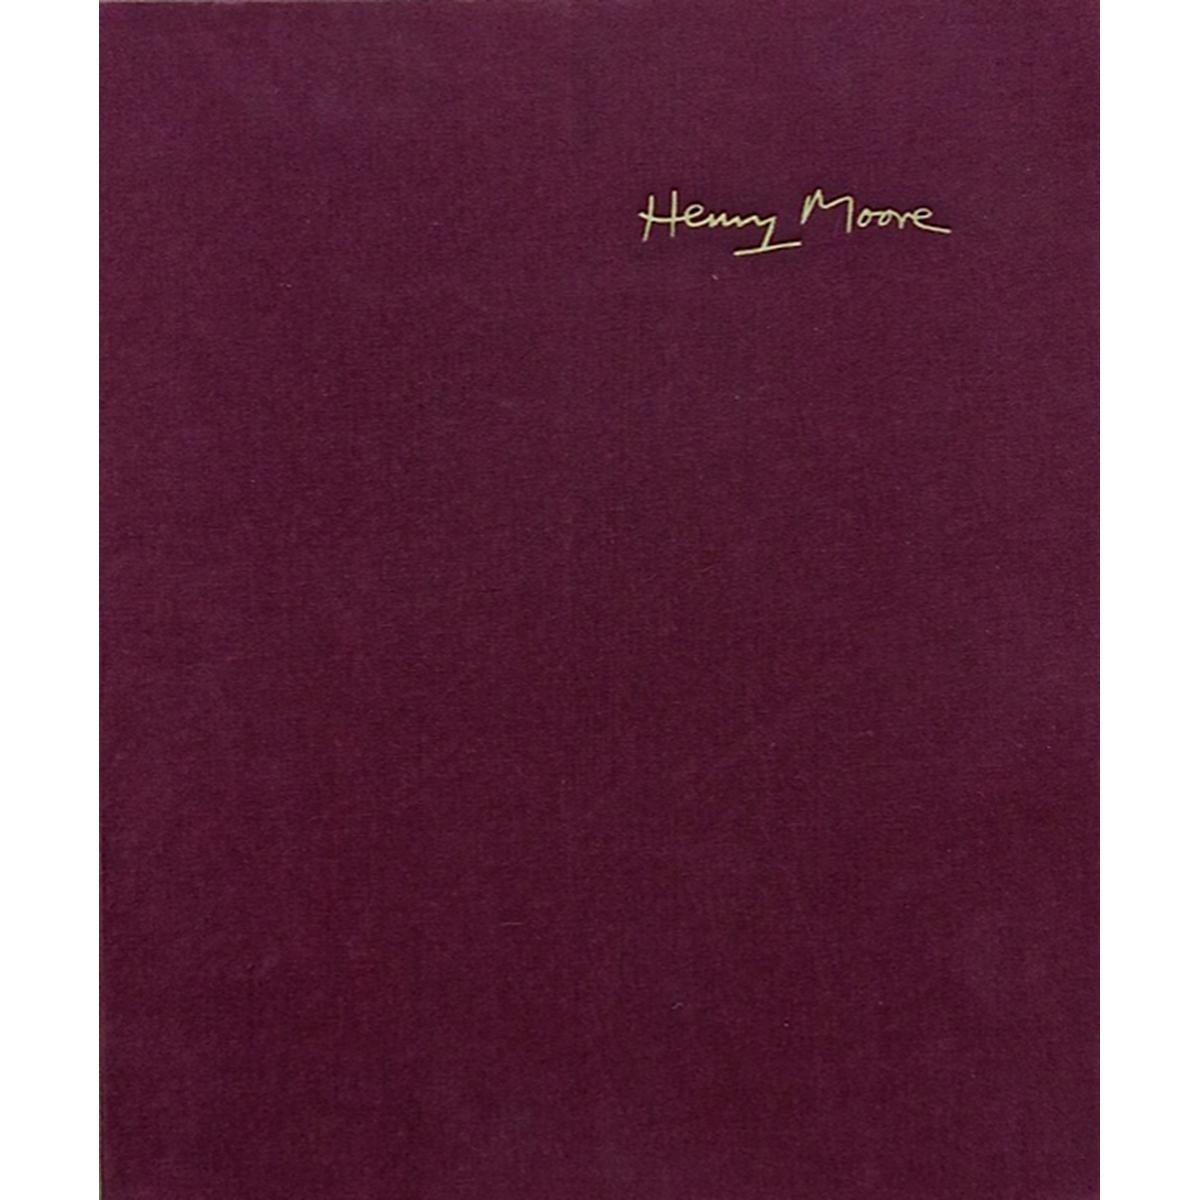 HENRY MOORE (BRITISH, 1898-1986)